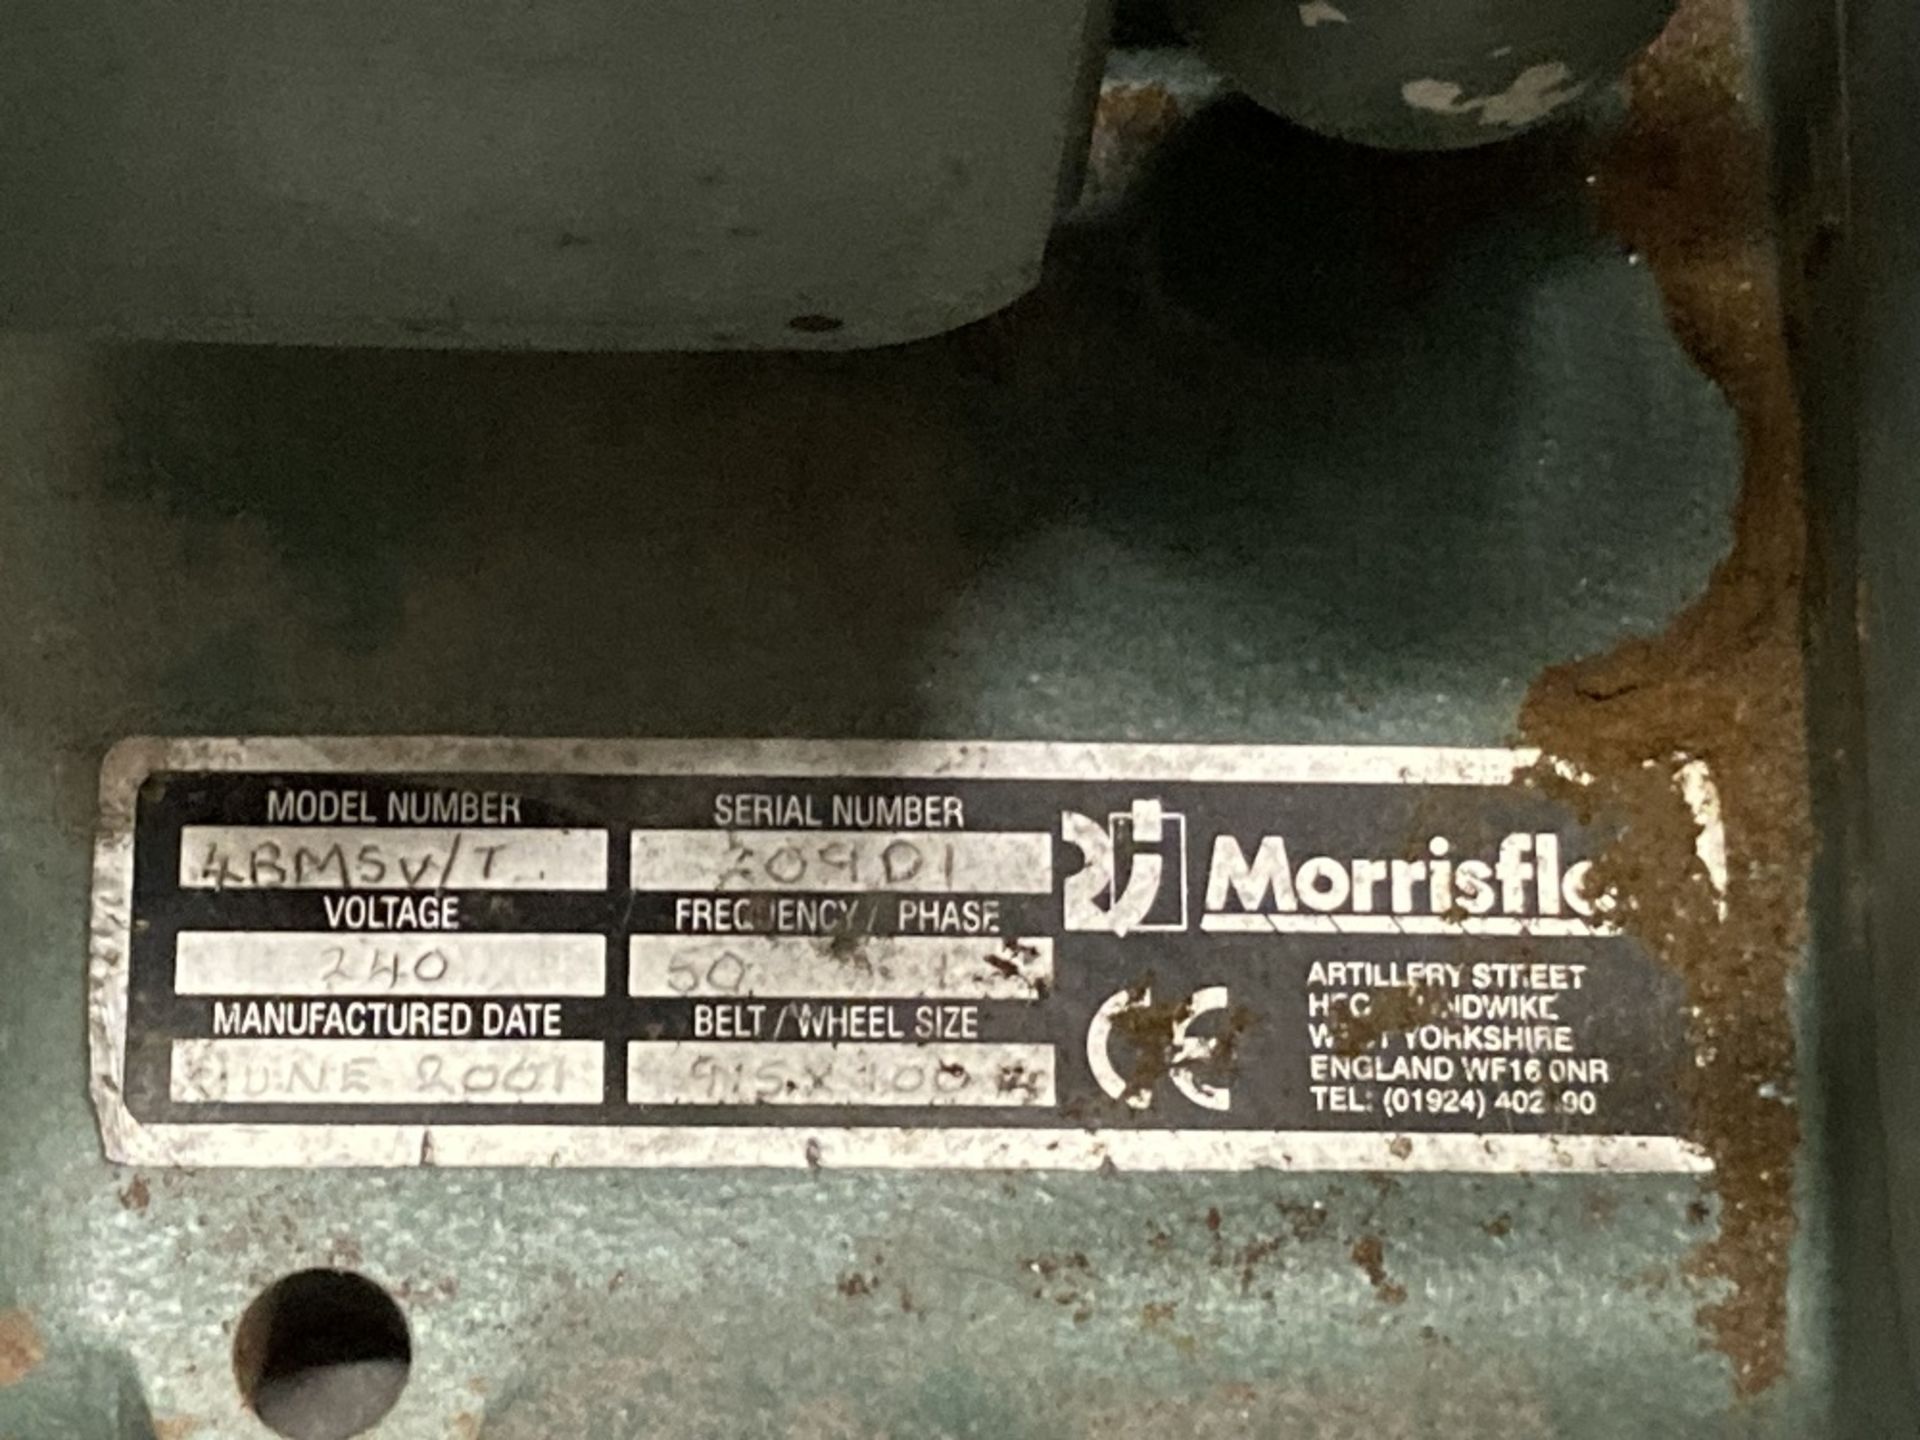 Morriflo 4BM5V/T 240v bench mounted sander - Image 5 of 5